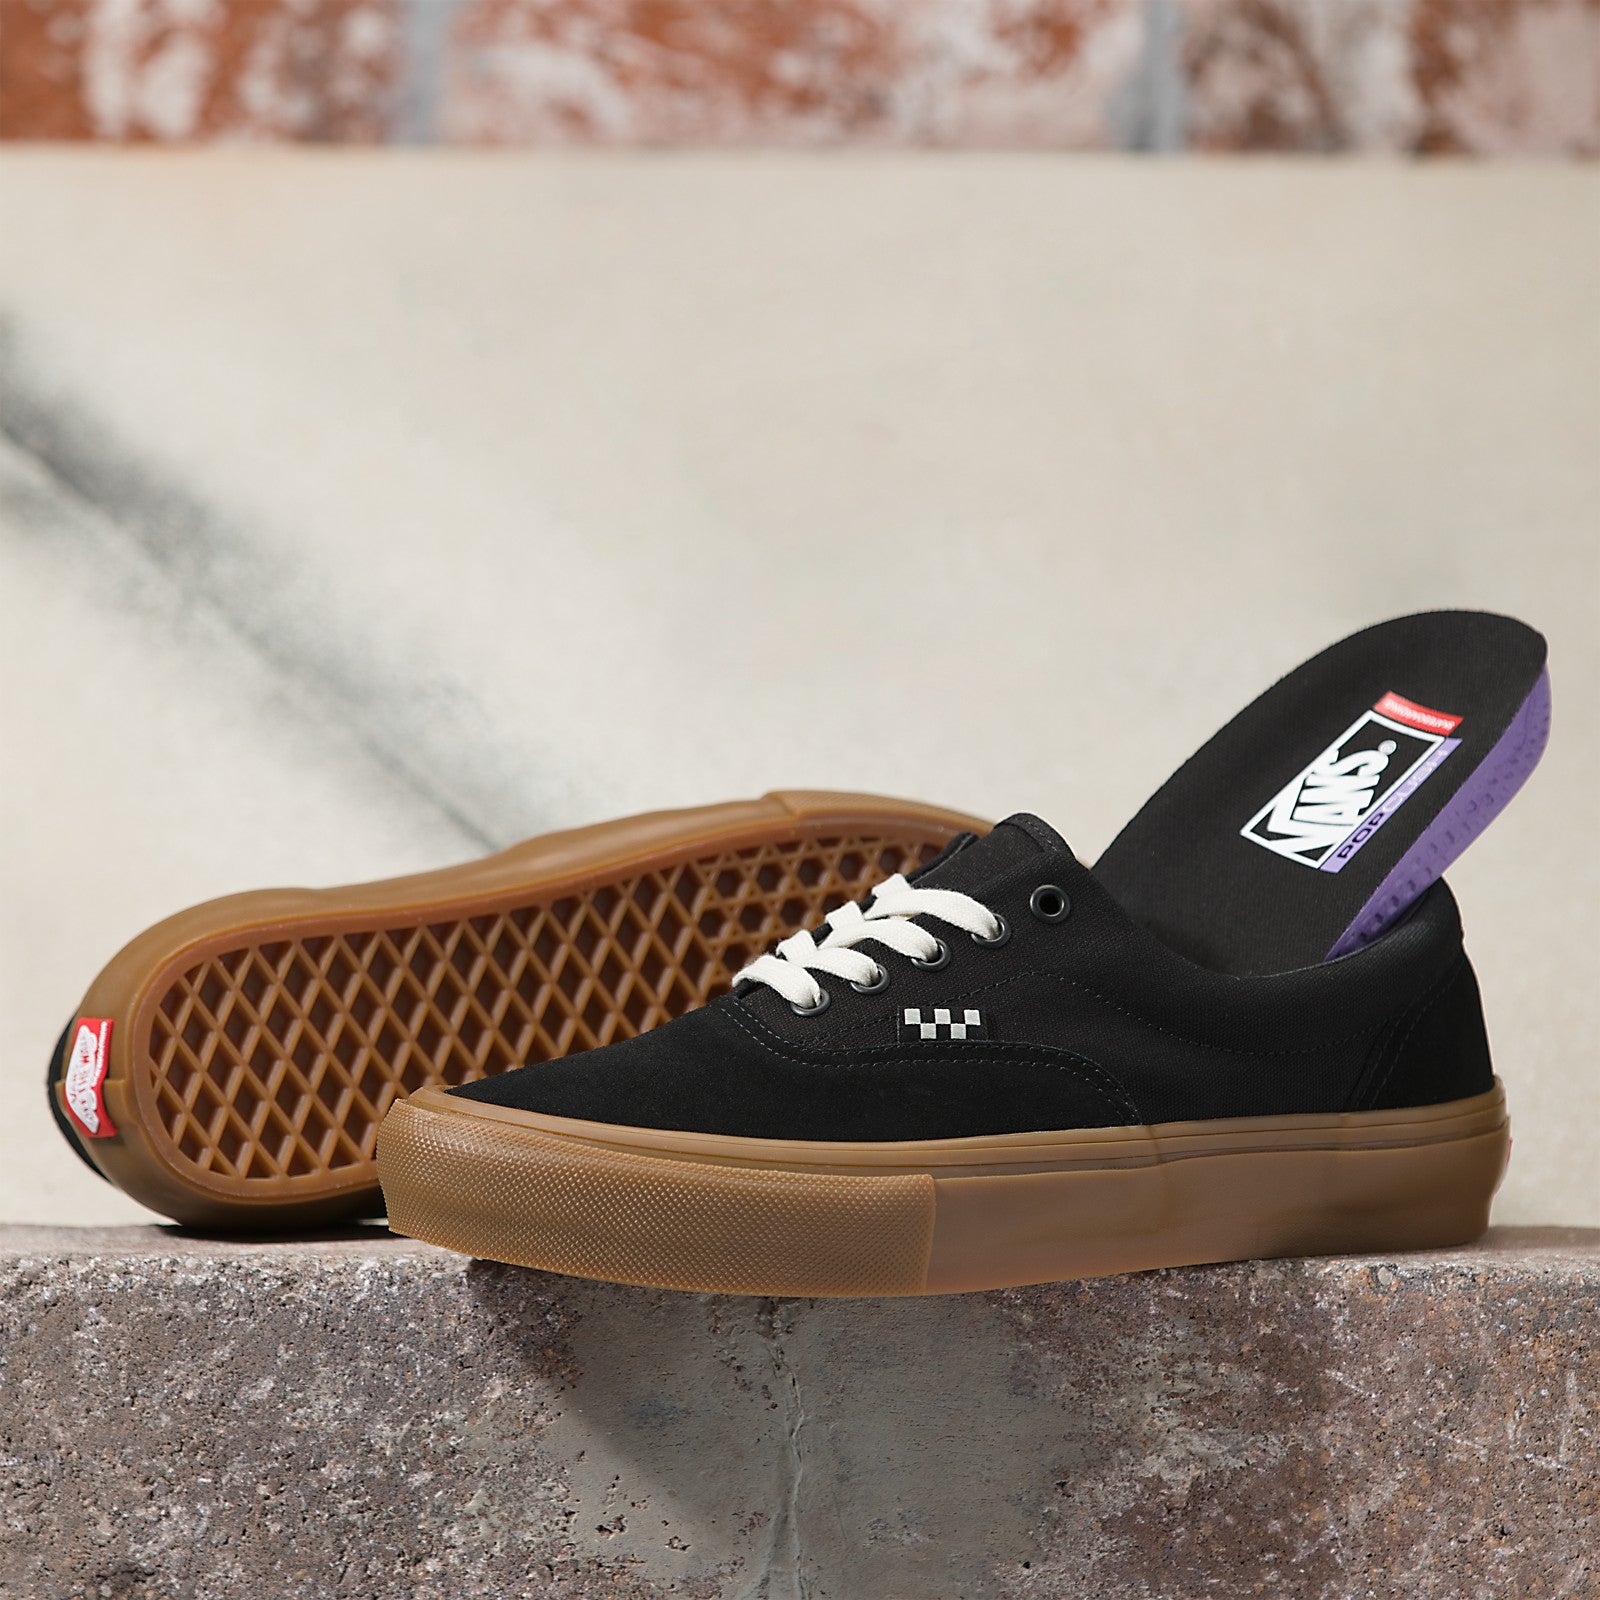 Black/Gum Skate Era Vans Skateboard Shoe